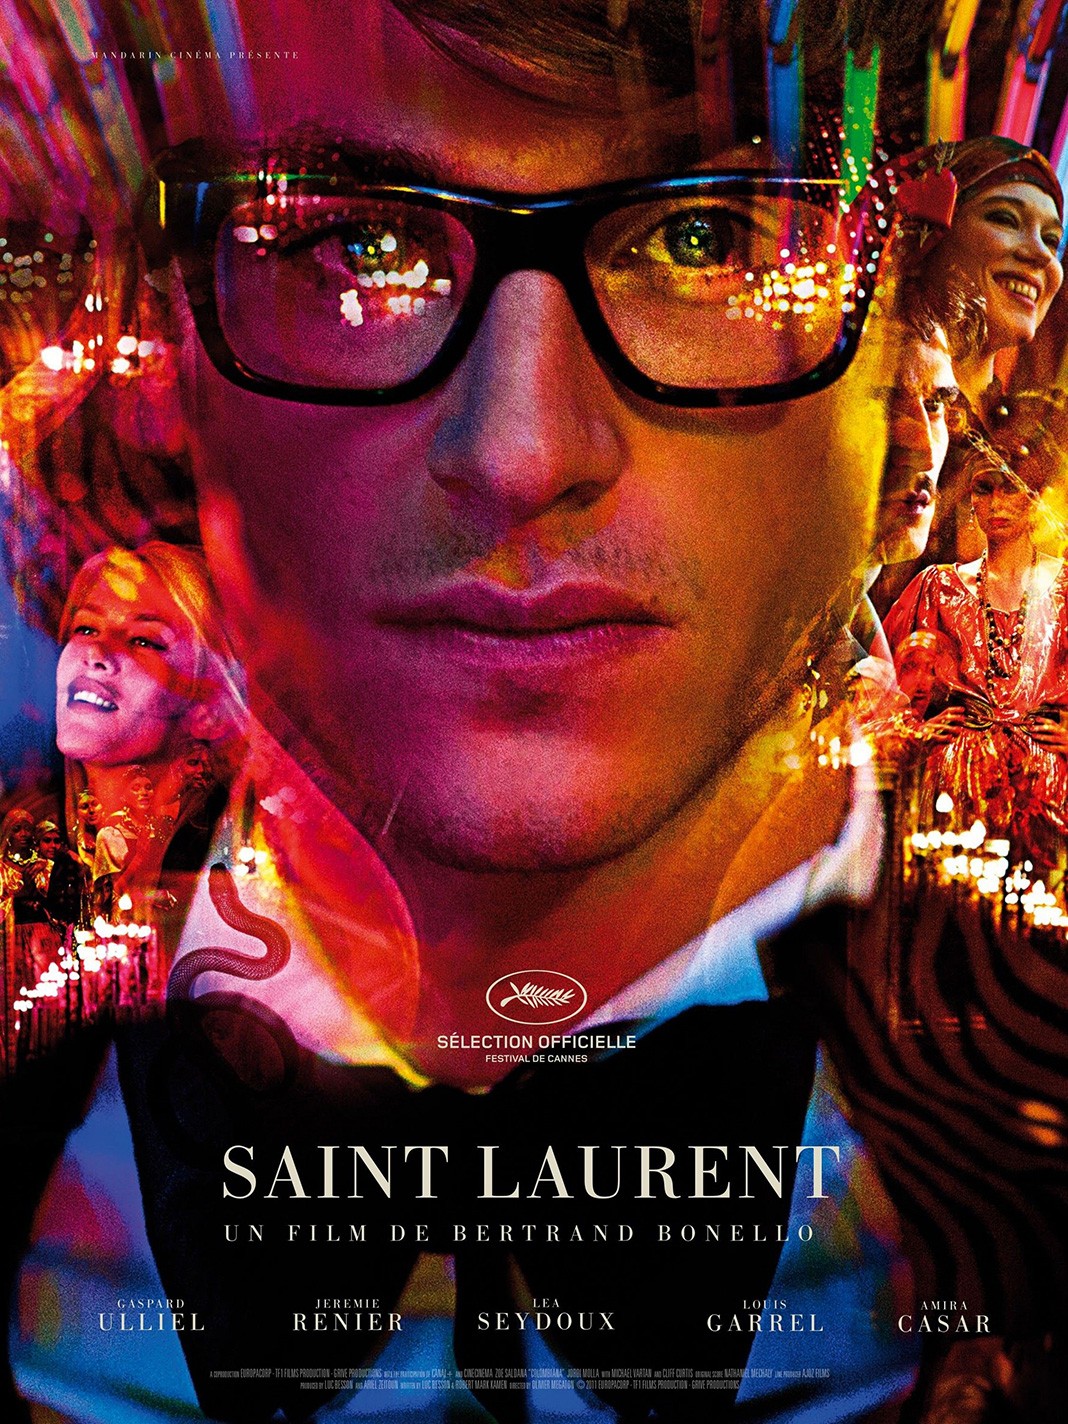 Афиша из фильма «Сен-Лоран. Стиль — это я» (Saint Laurent), 2014 г.